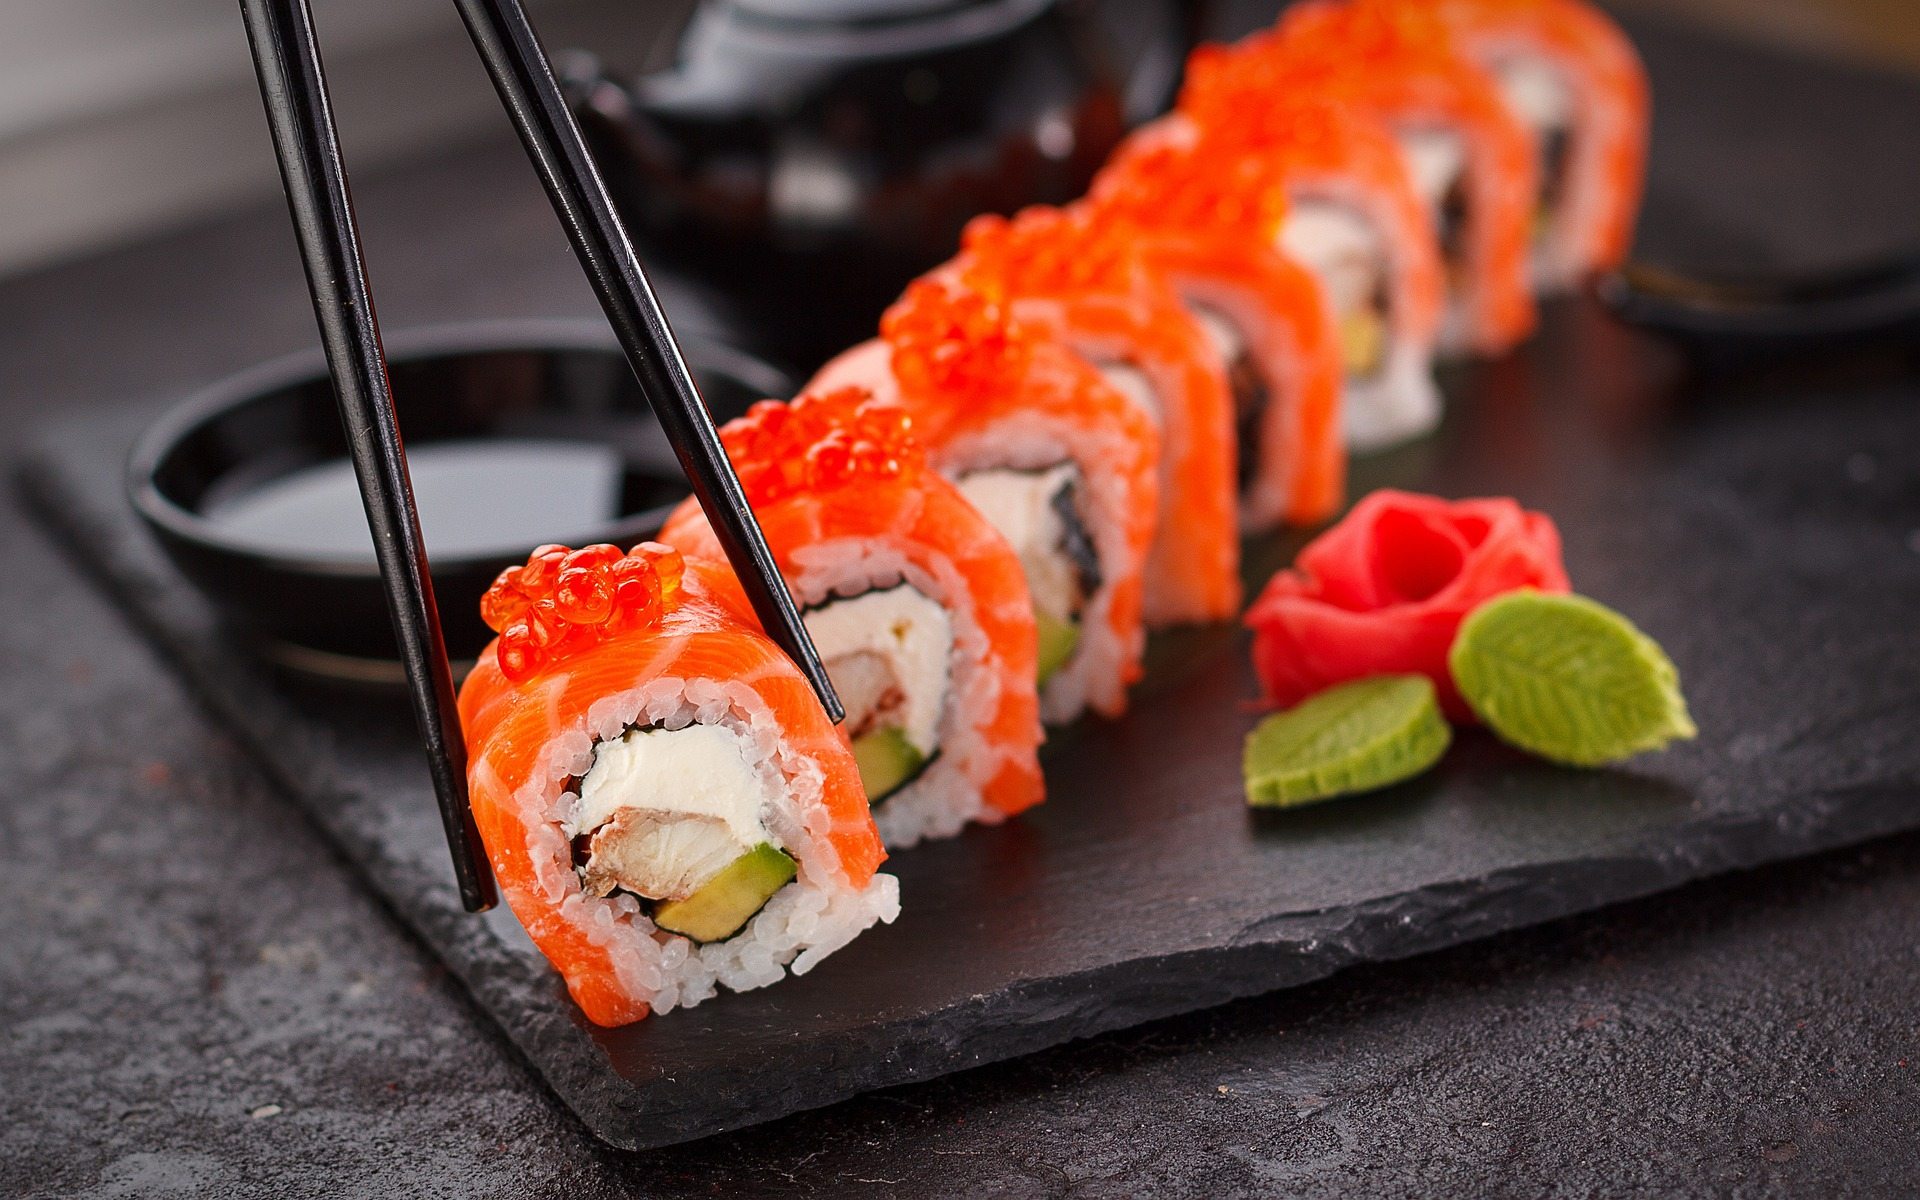 Menges correctament el sushi? Els 5 consells per fer-ho de forma adequada